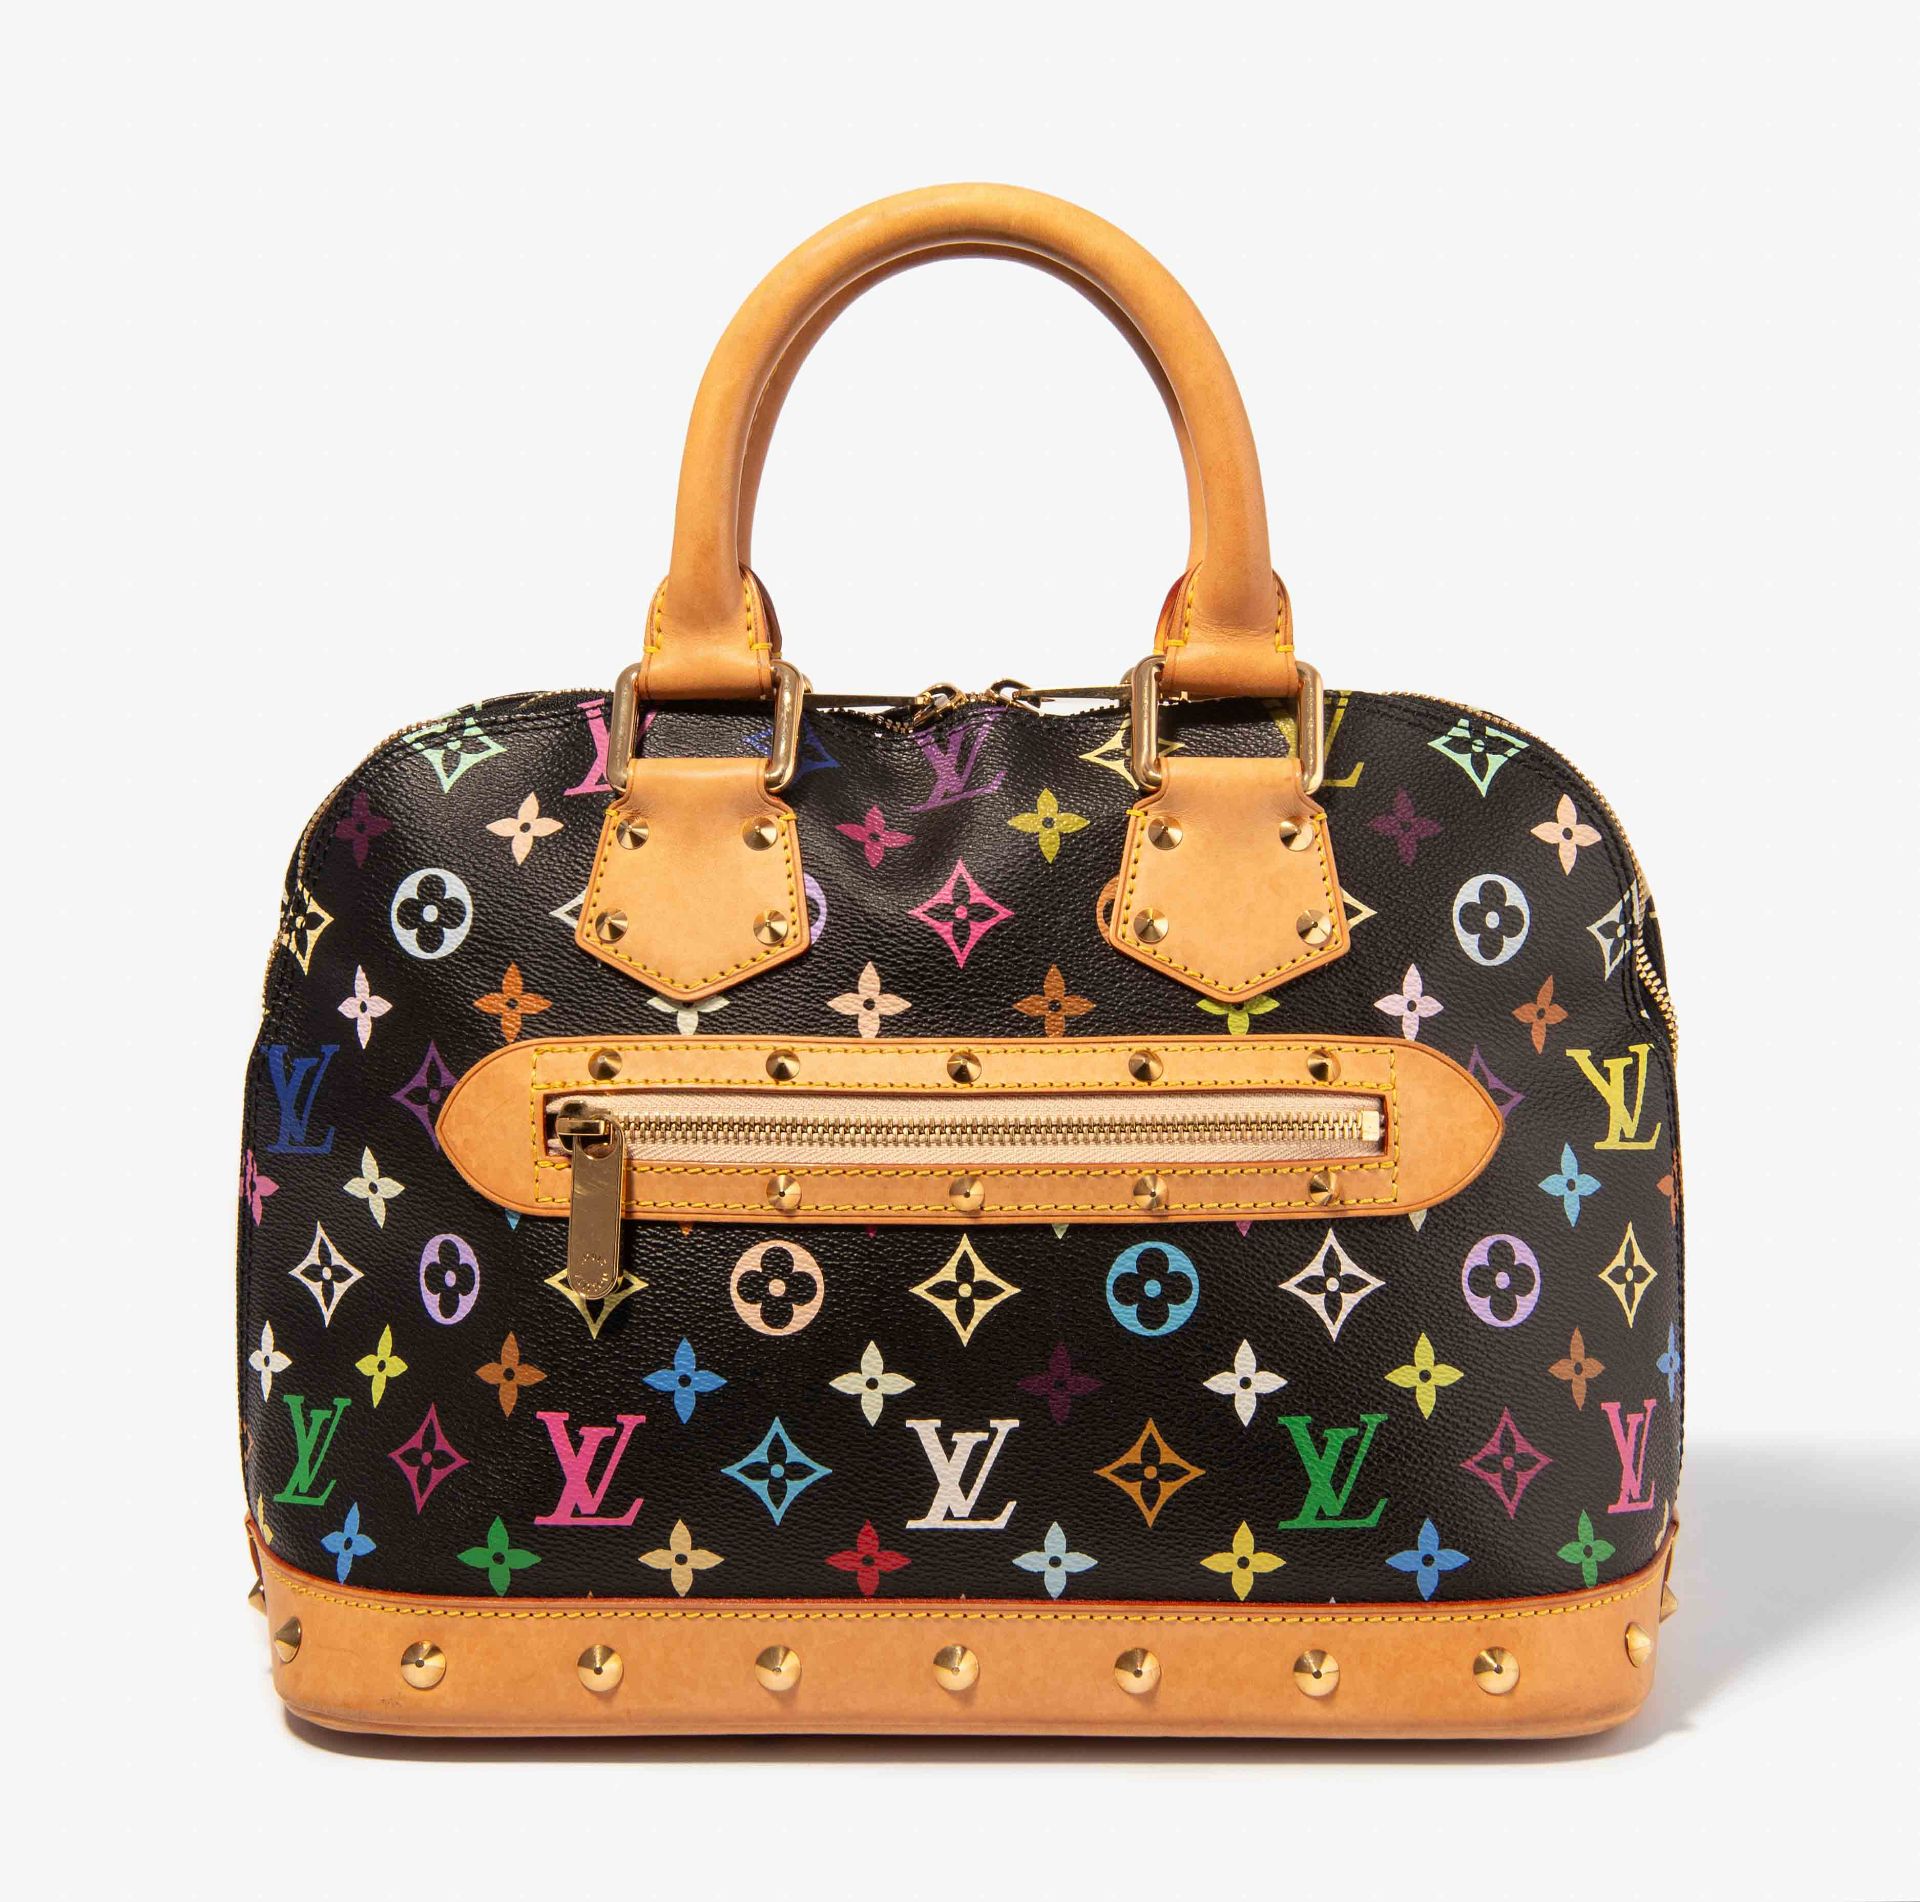 Louis Vuitton, Handtasche "Alma"